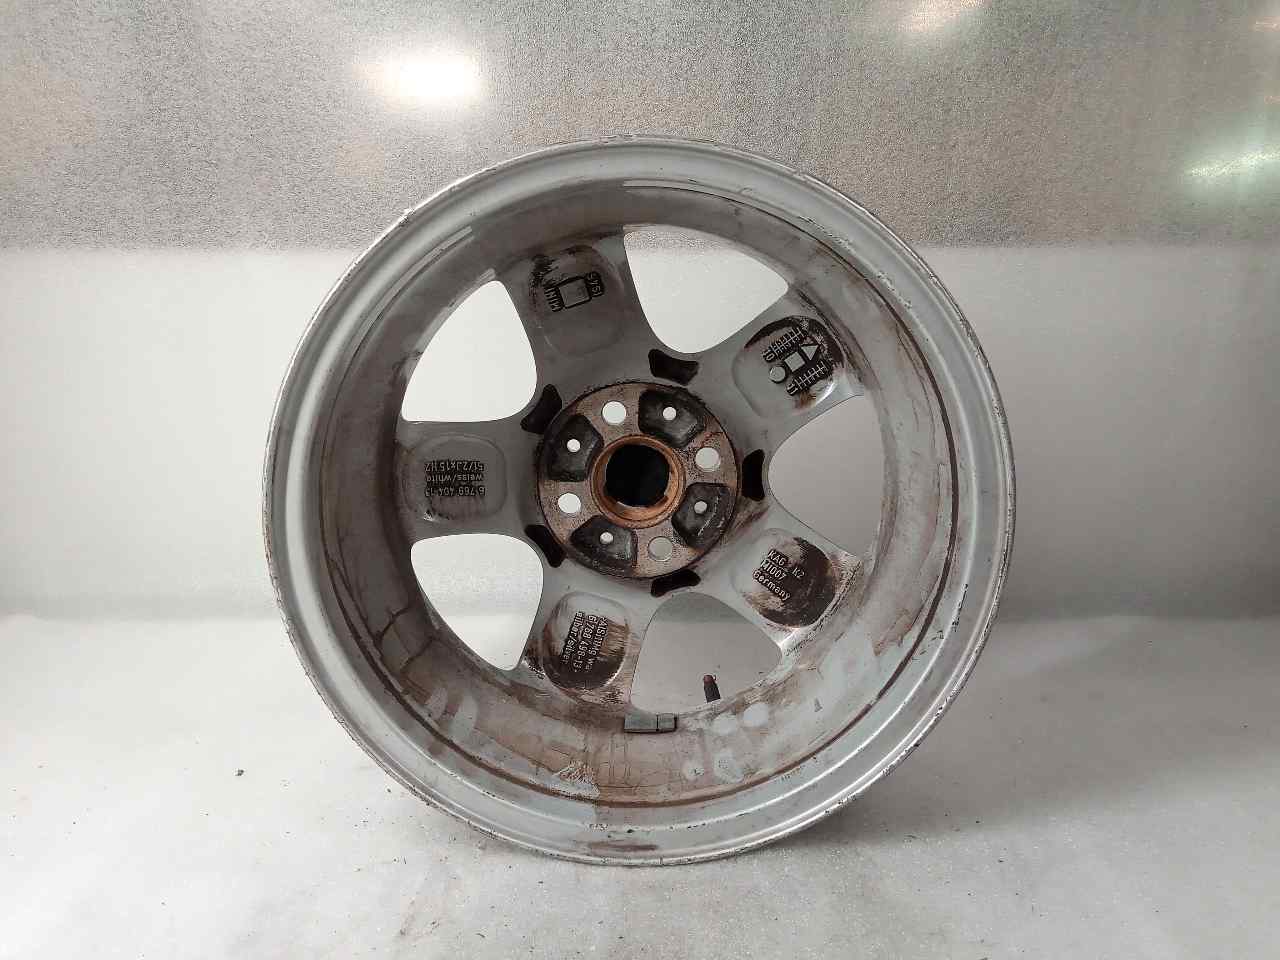 MINI Cooper R56 (2006-2015) Wheel 676849813 24856173